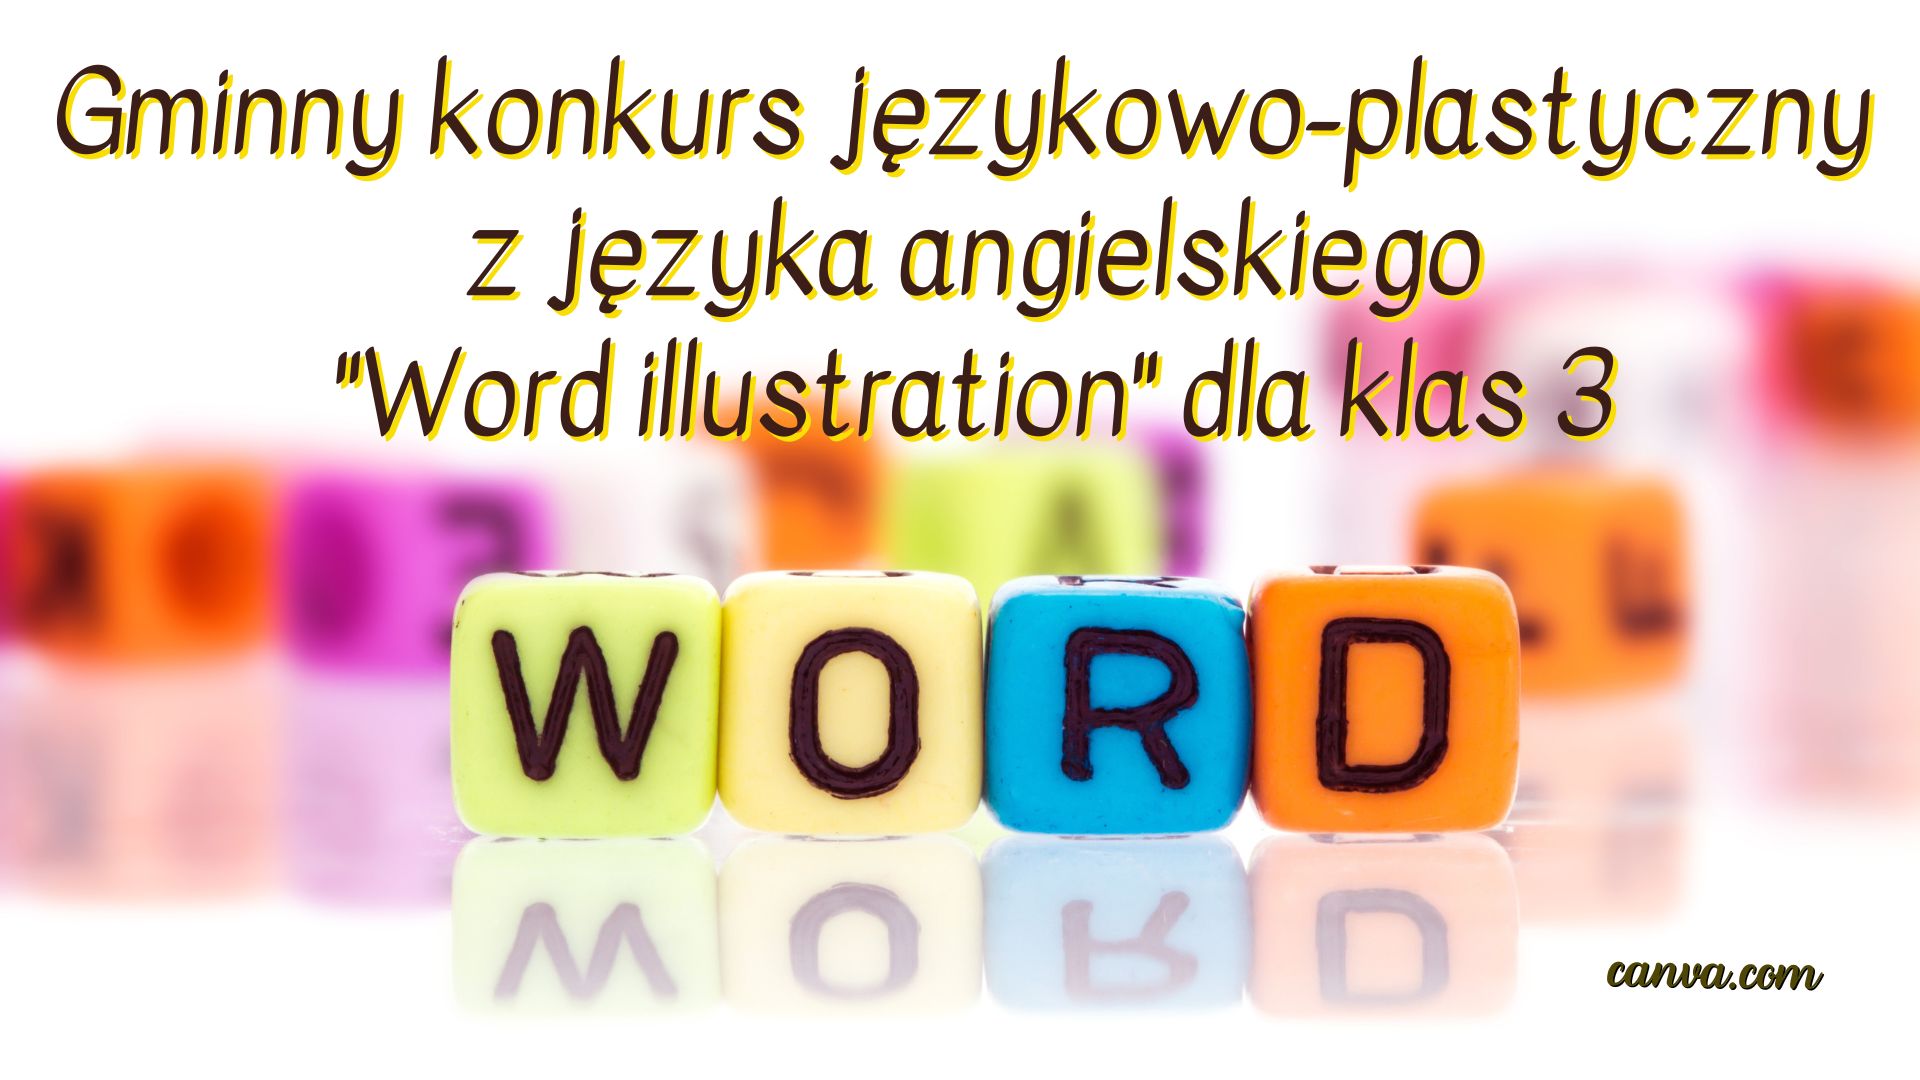 Gminny konkurs językowo-plastyczny z języka angielskiego "Word illustration" dla klas 3